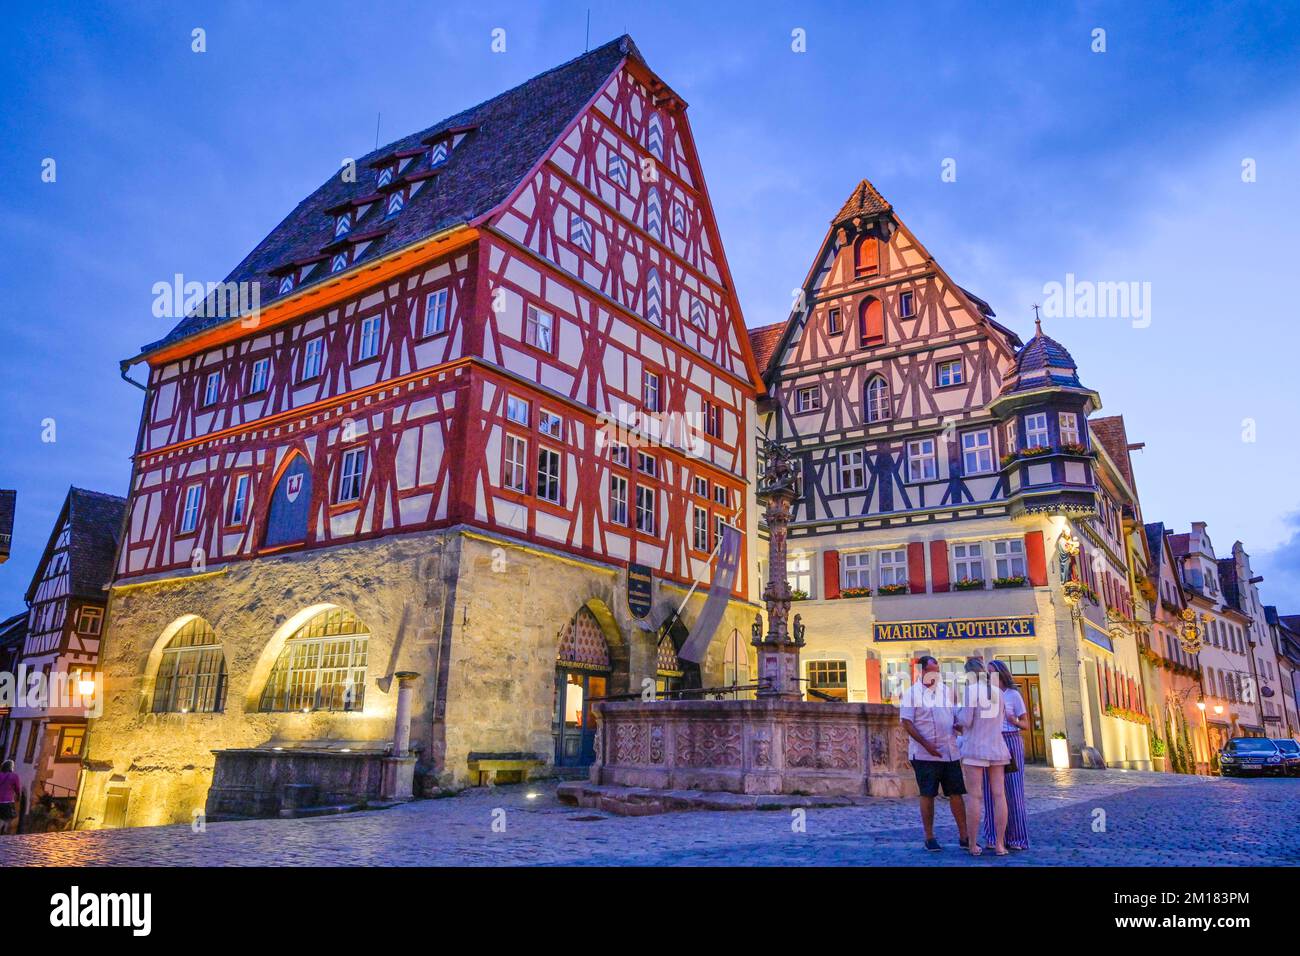 Fleischhaus, Marien-Apotheke, Marktplatz, Rothenburg ob der Tauber, Bayern, Deutschland, Europa Stockfoto